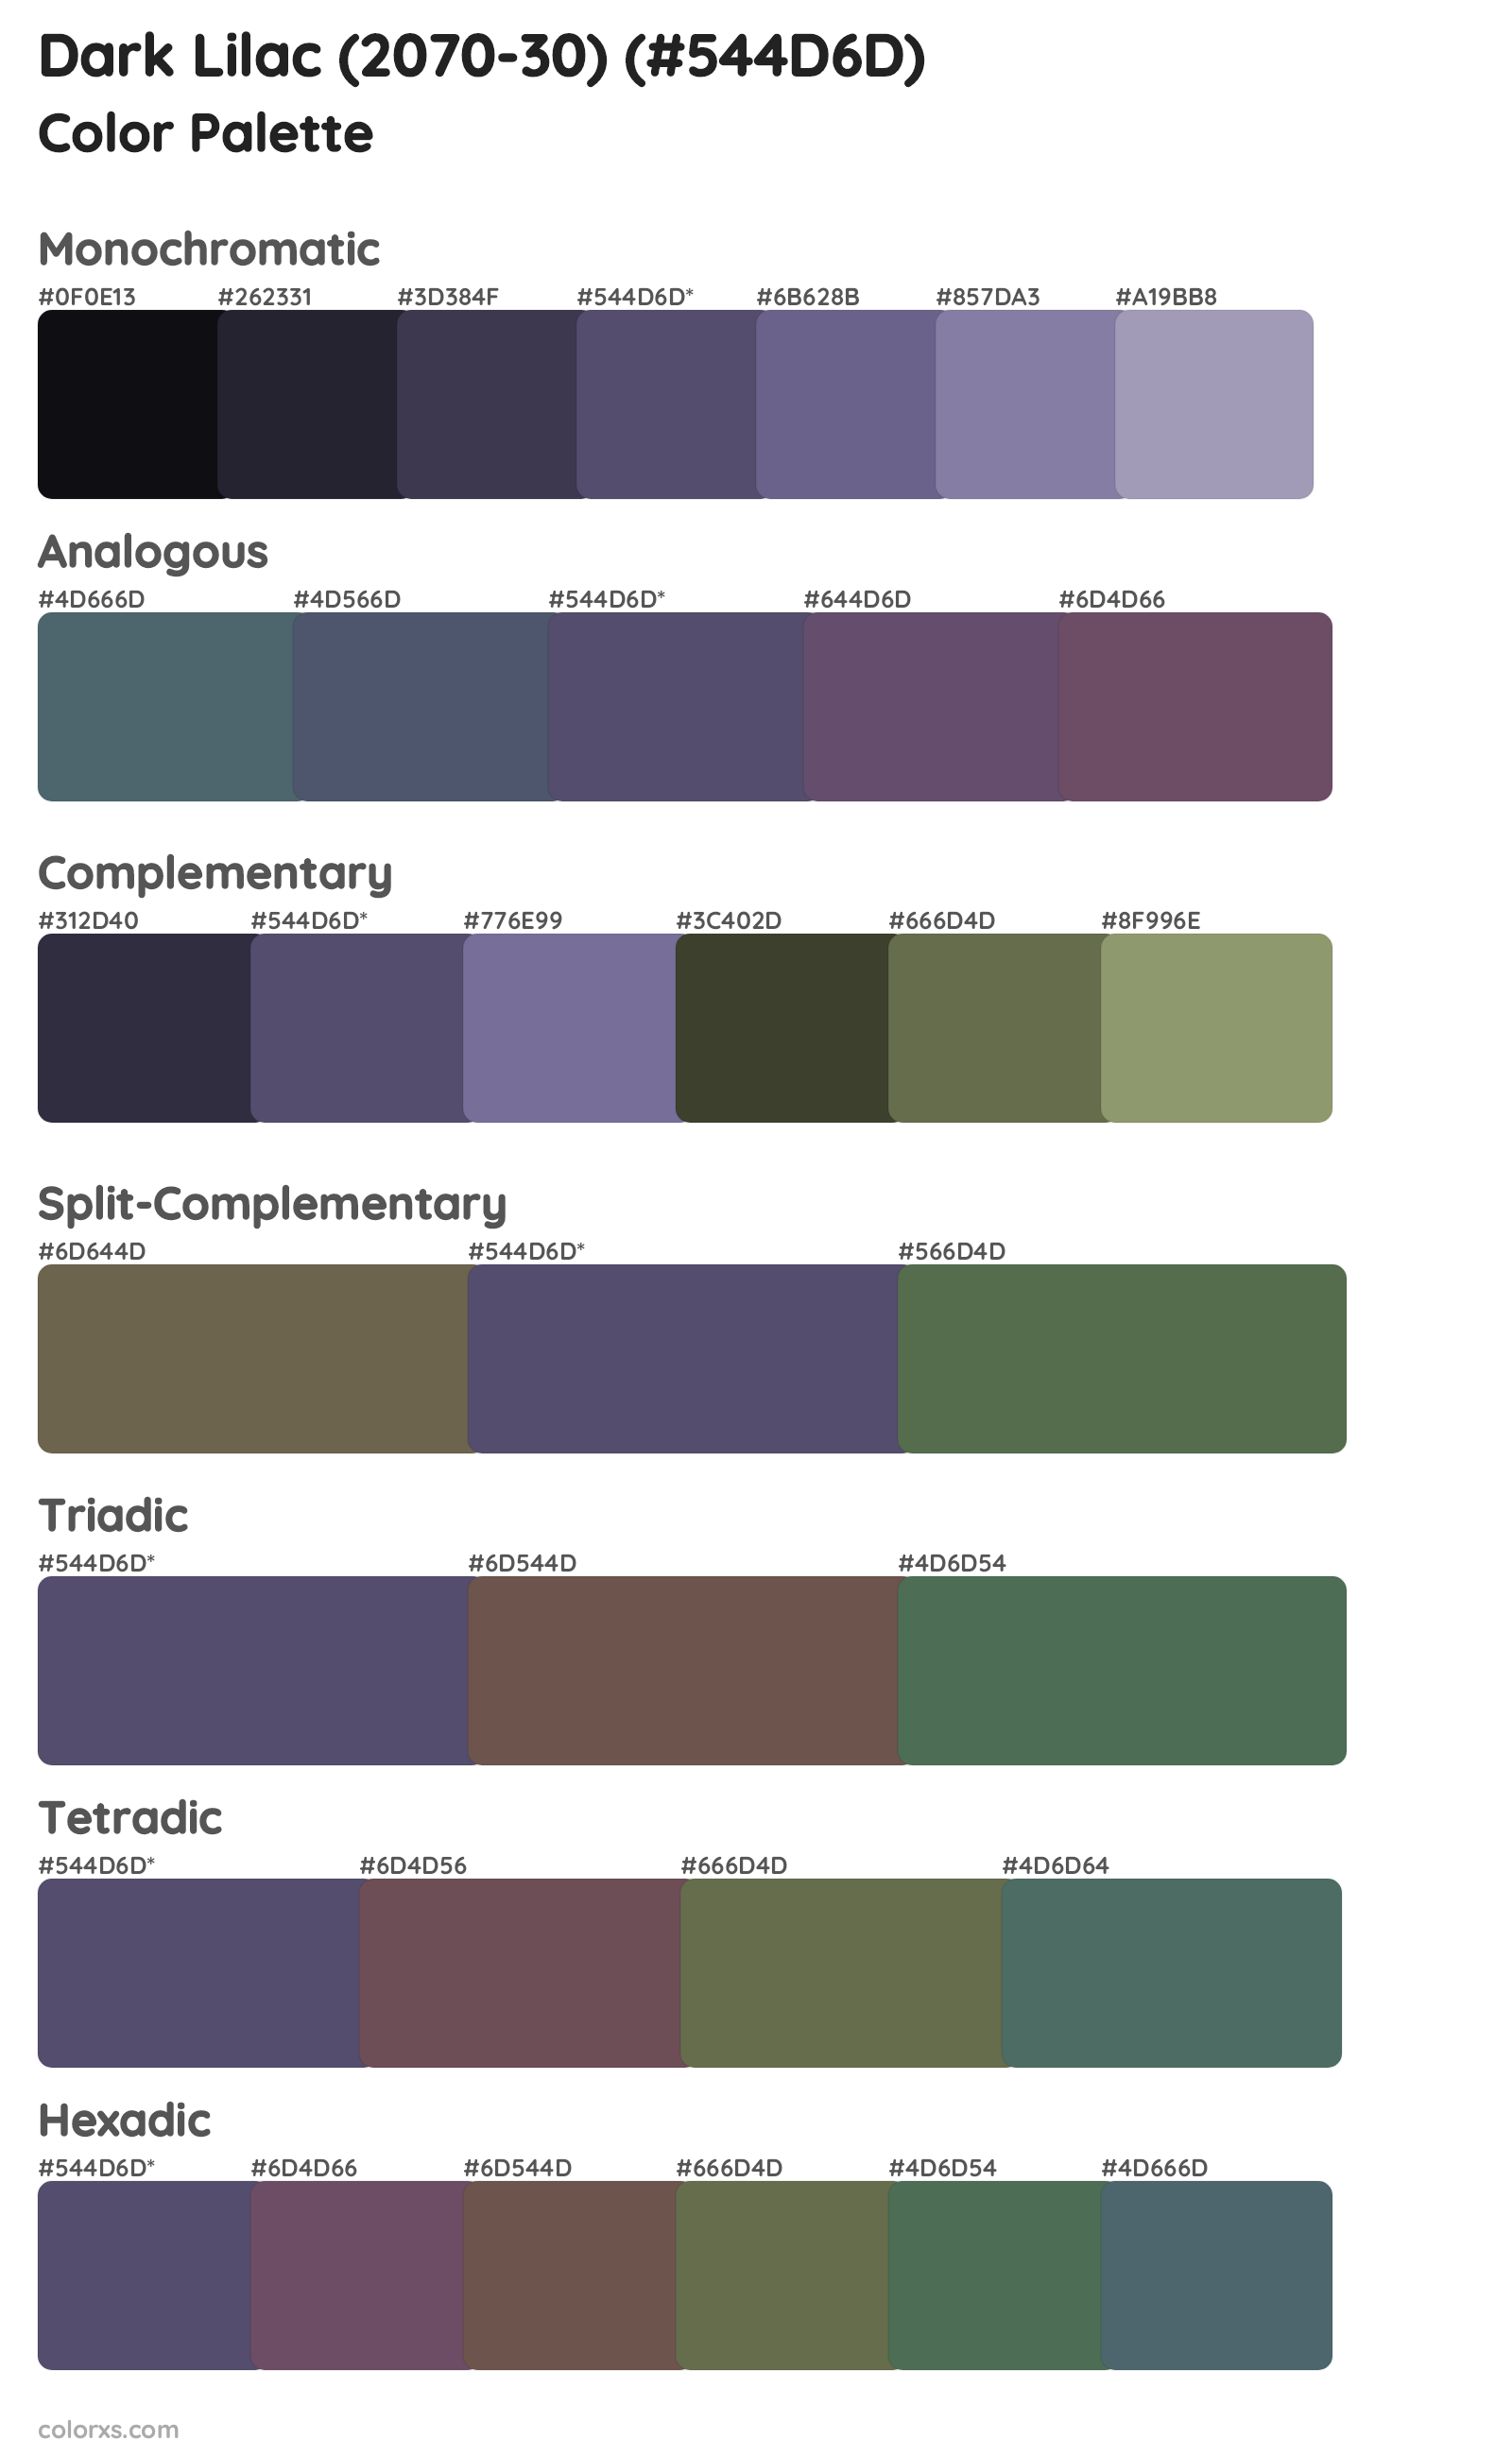 Dark Lilac (2070-30) Color Scheme Palettes